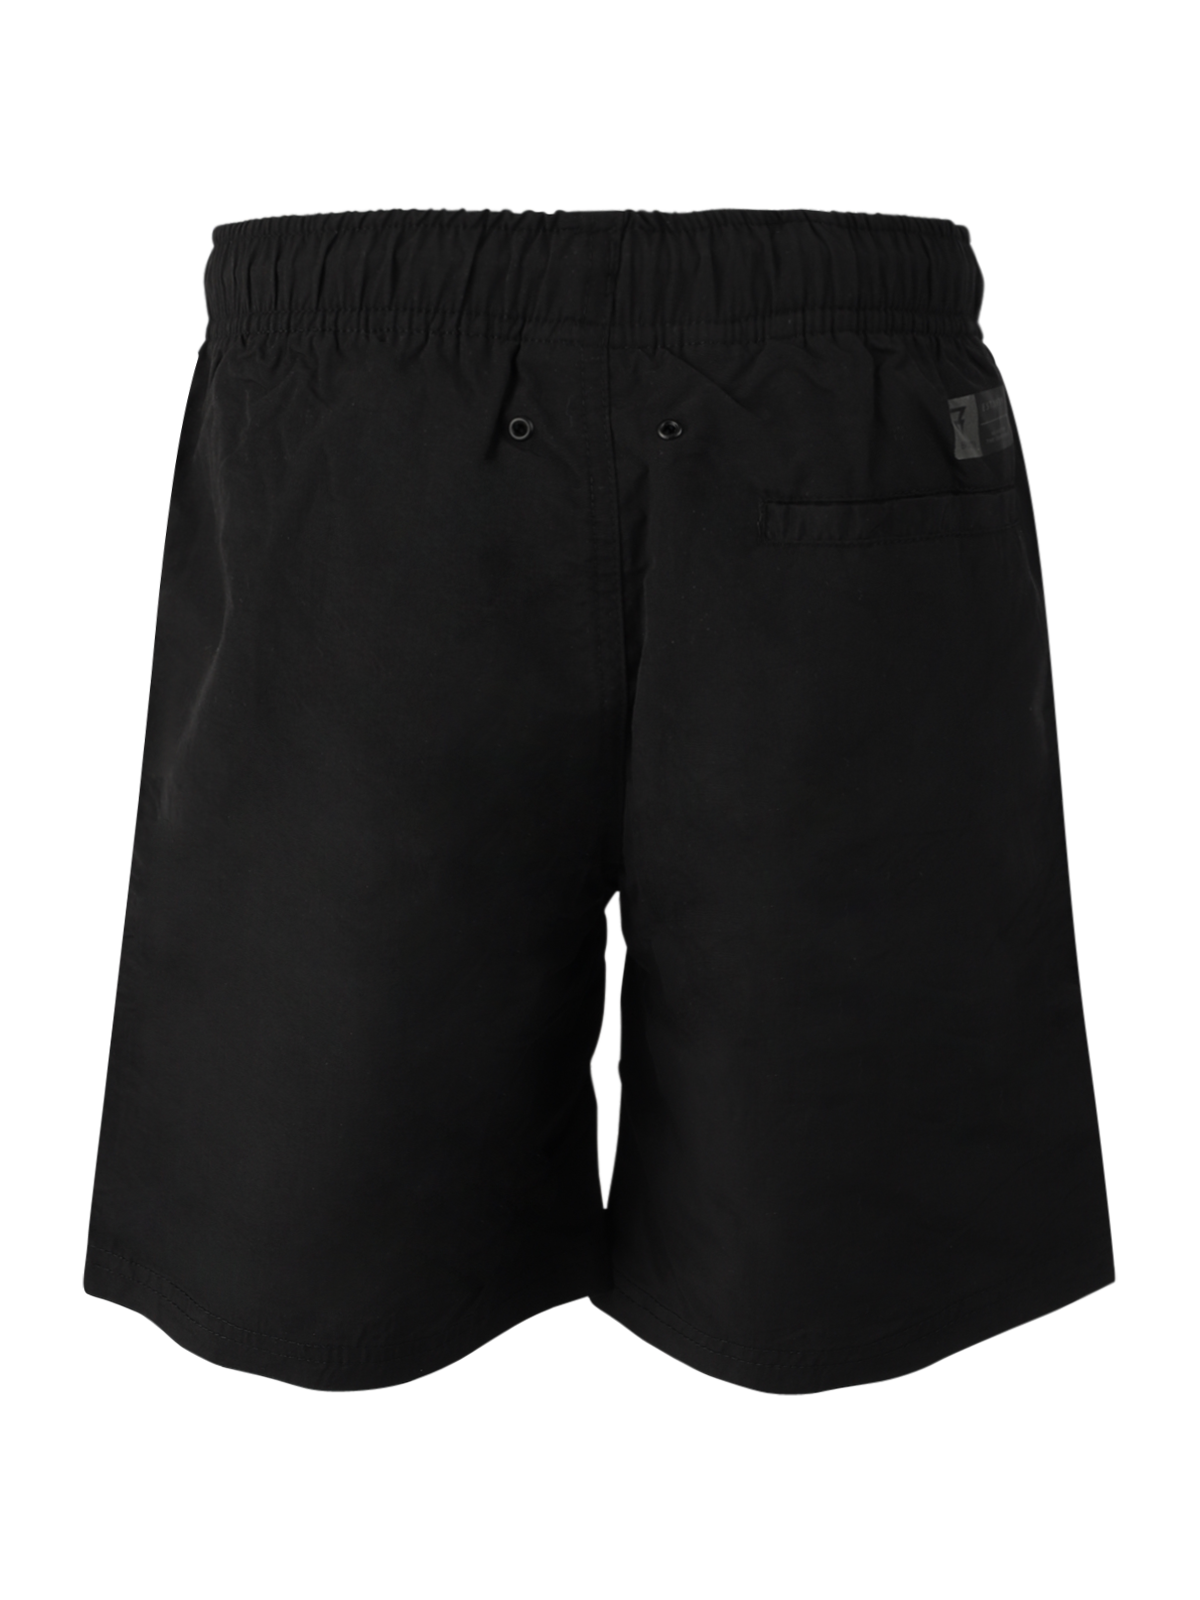 Hestey Boys Swim Shorts | Black